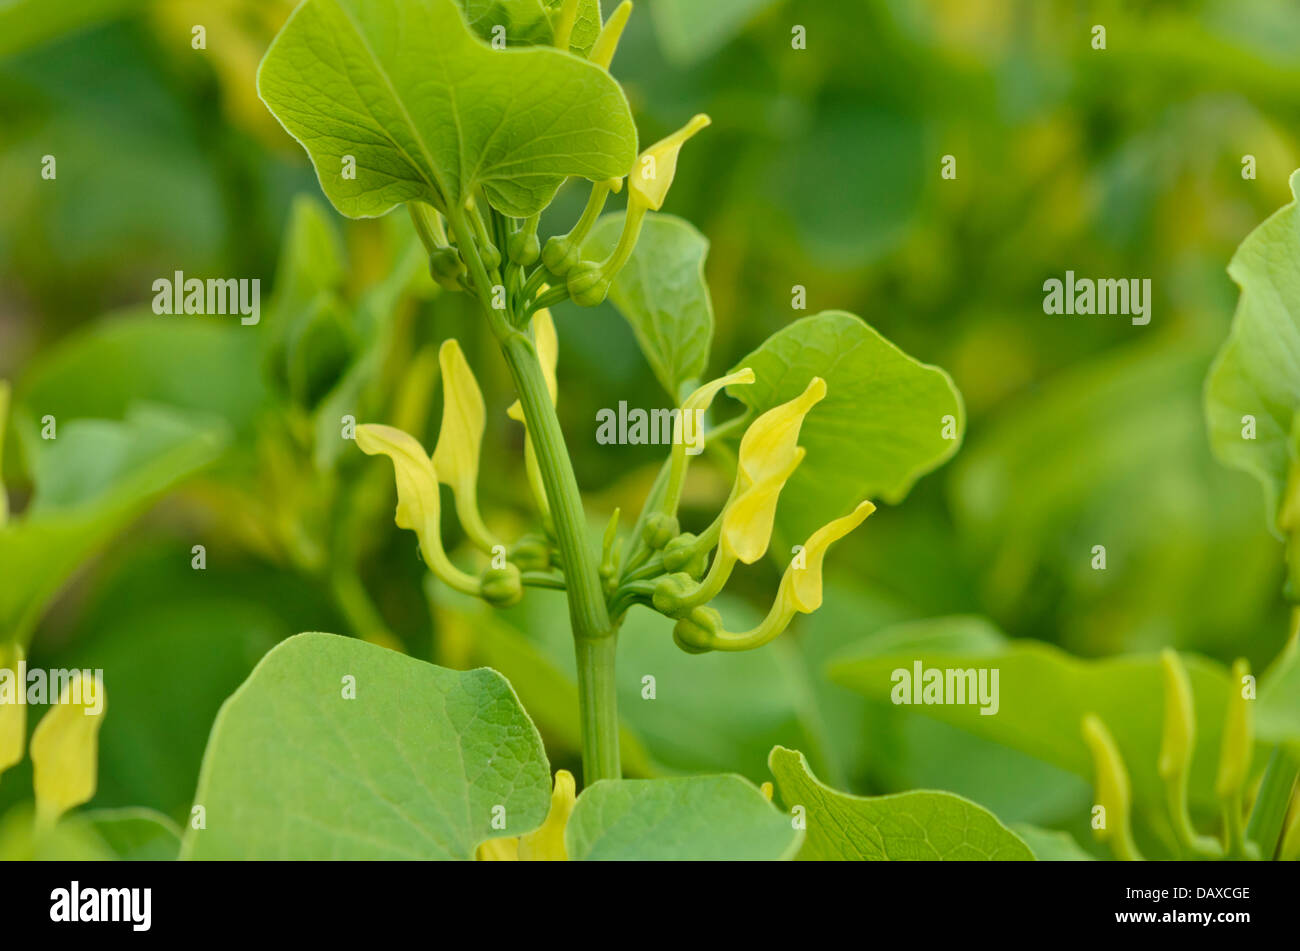 European birthwort (Aristolochia clematitis) Stock Photo